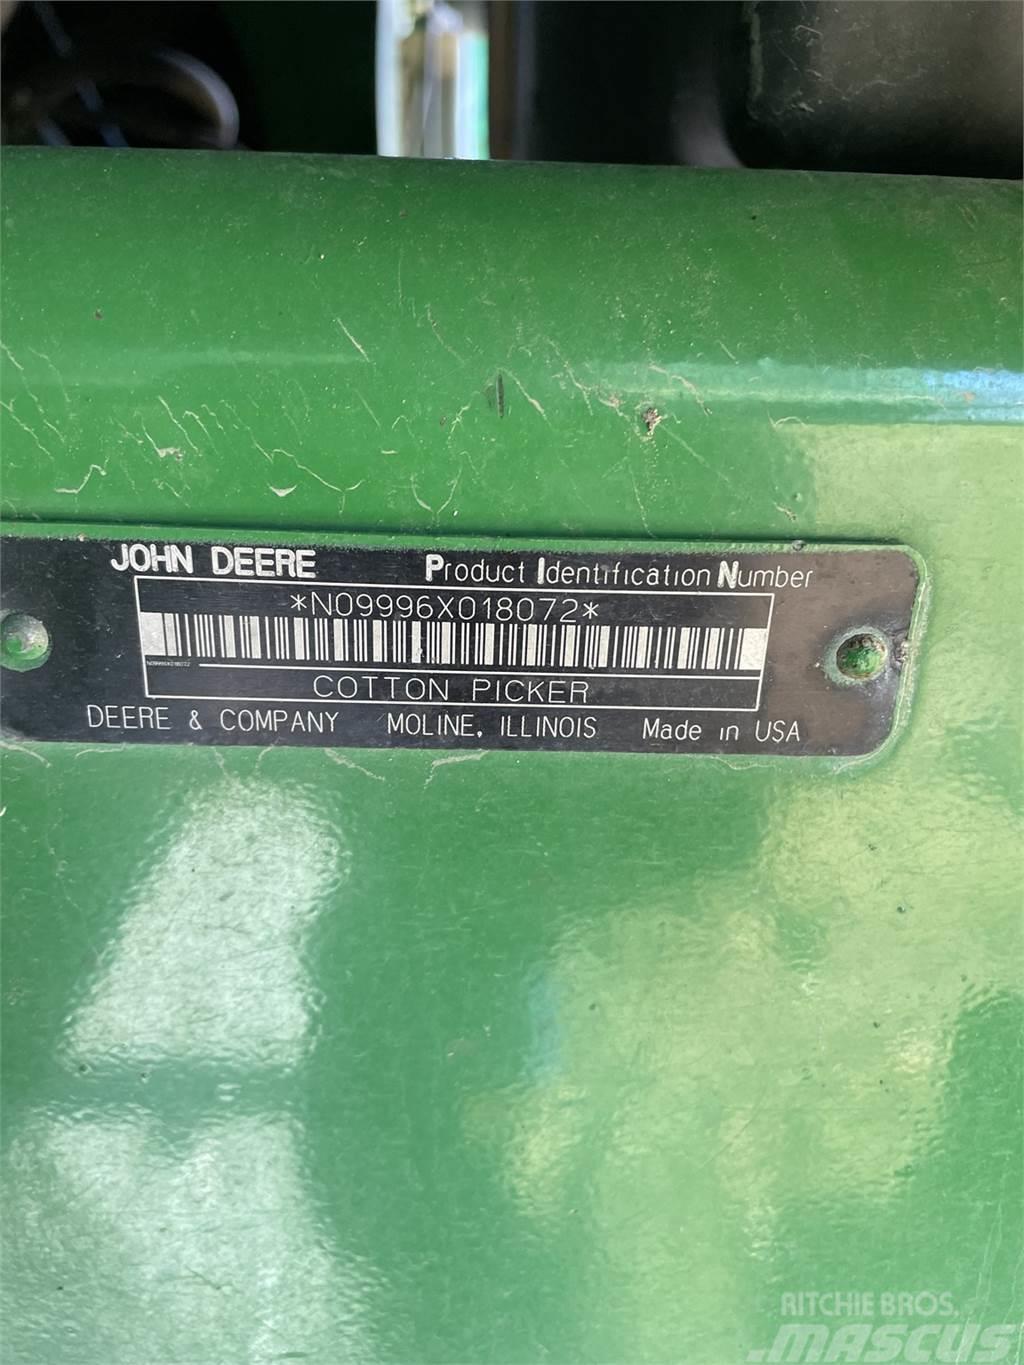 John Deere 9996 Diger hasat ve söküm makinaları